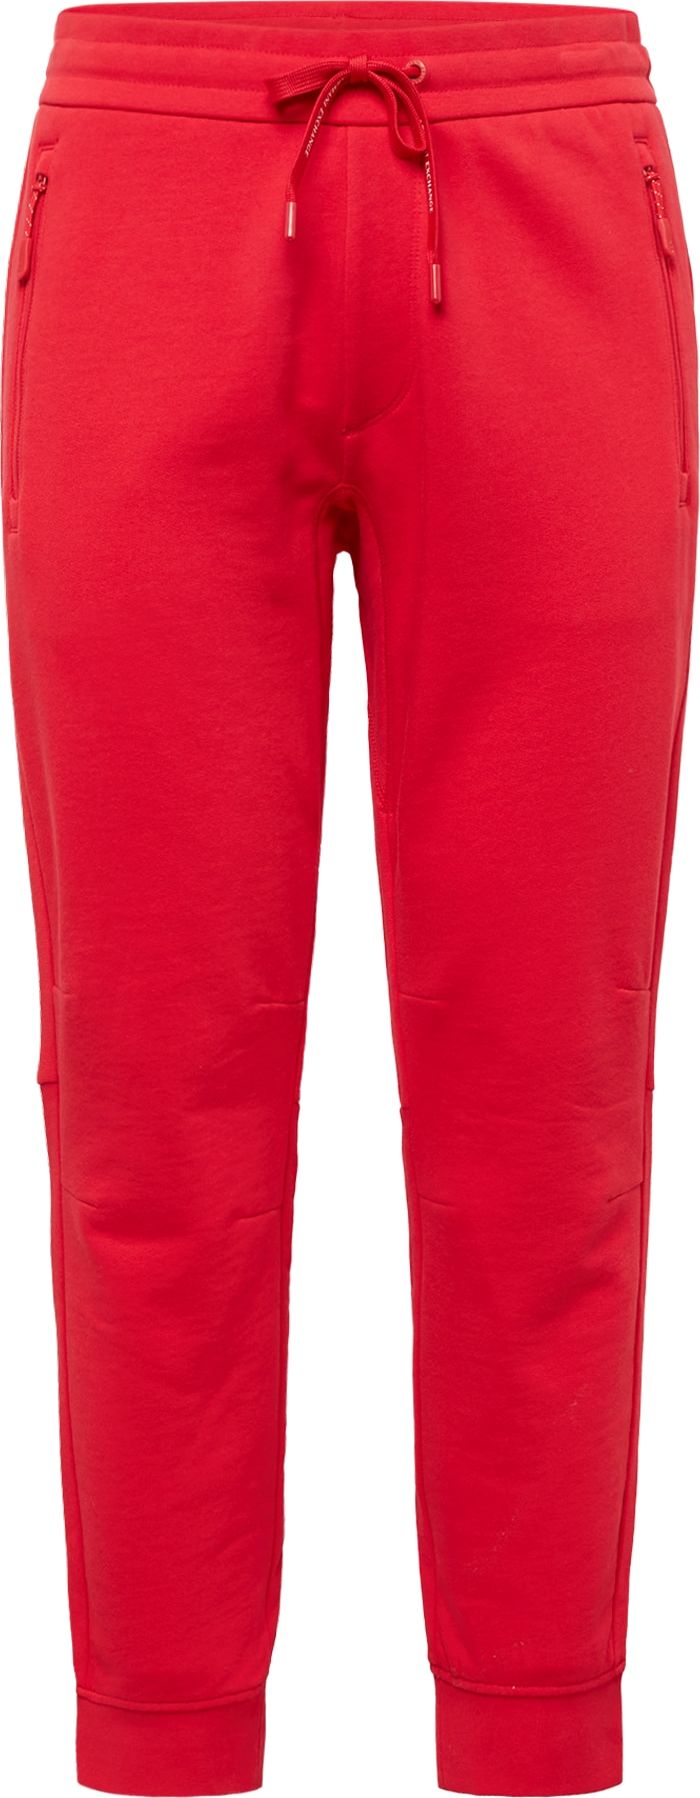 ARMANI EXCHANGE Kalhoty červená